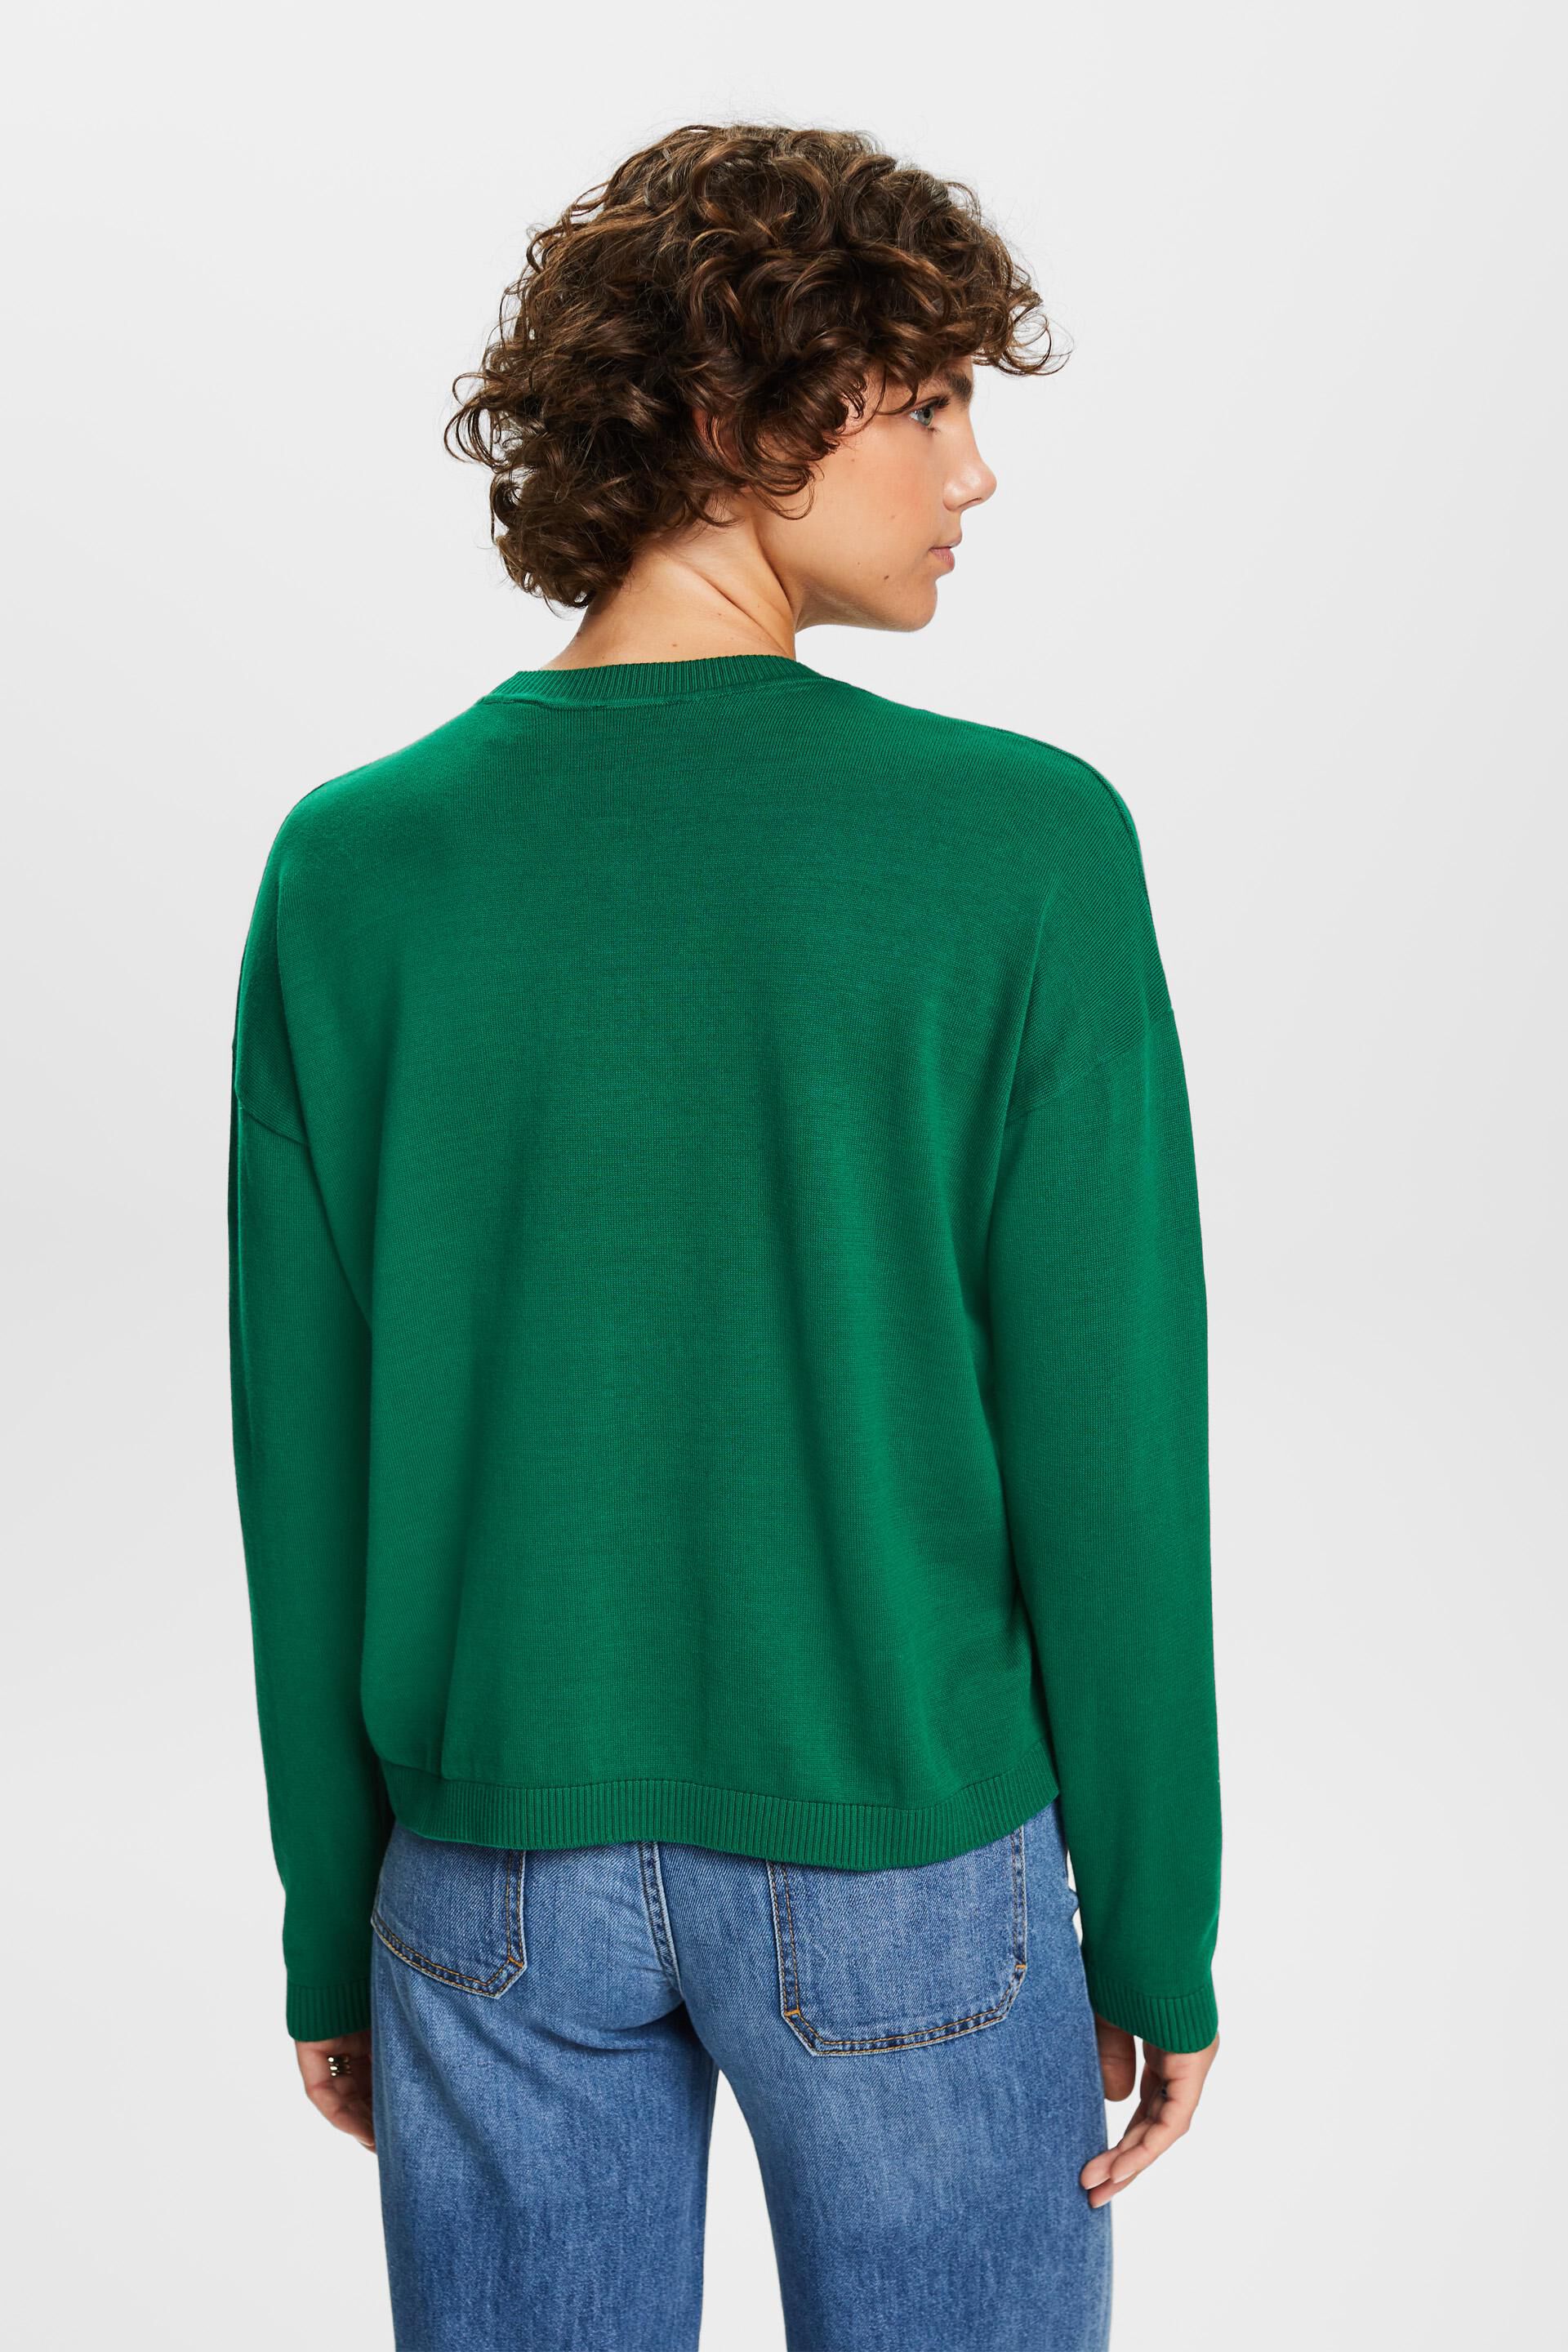 Esprit Baumwolle Übergroßer 100 Pullover, %